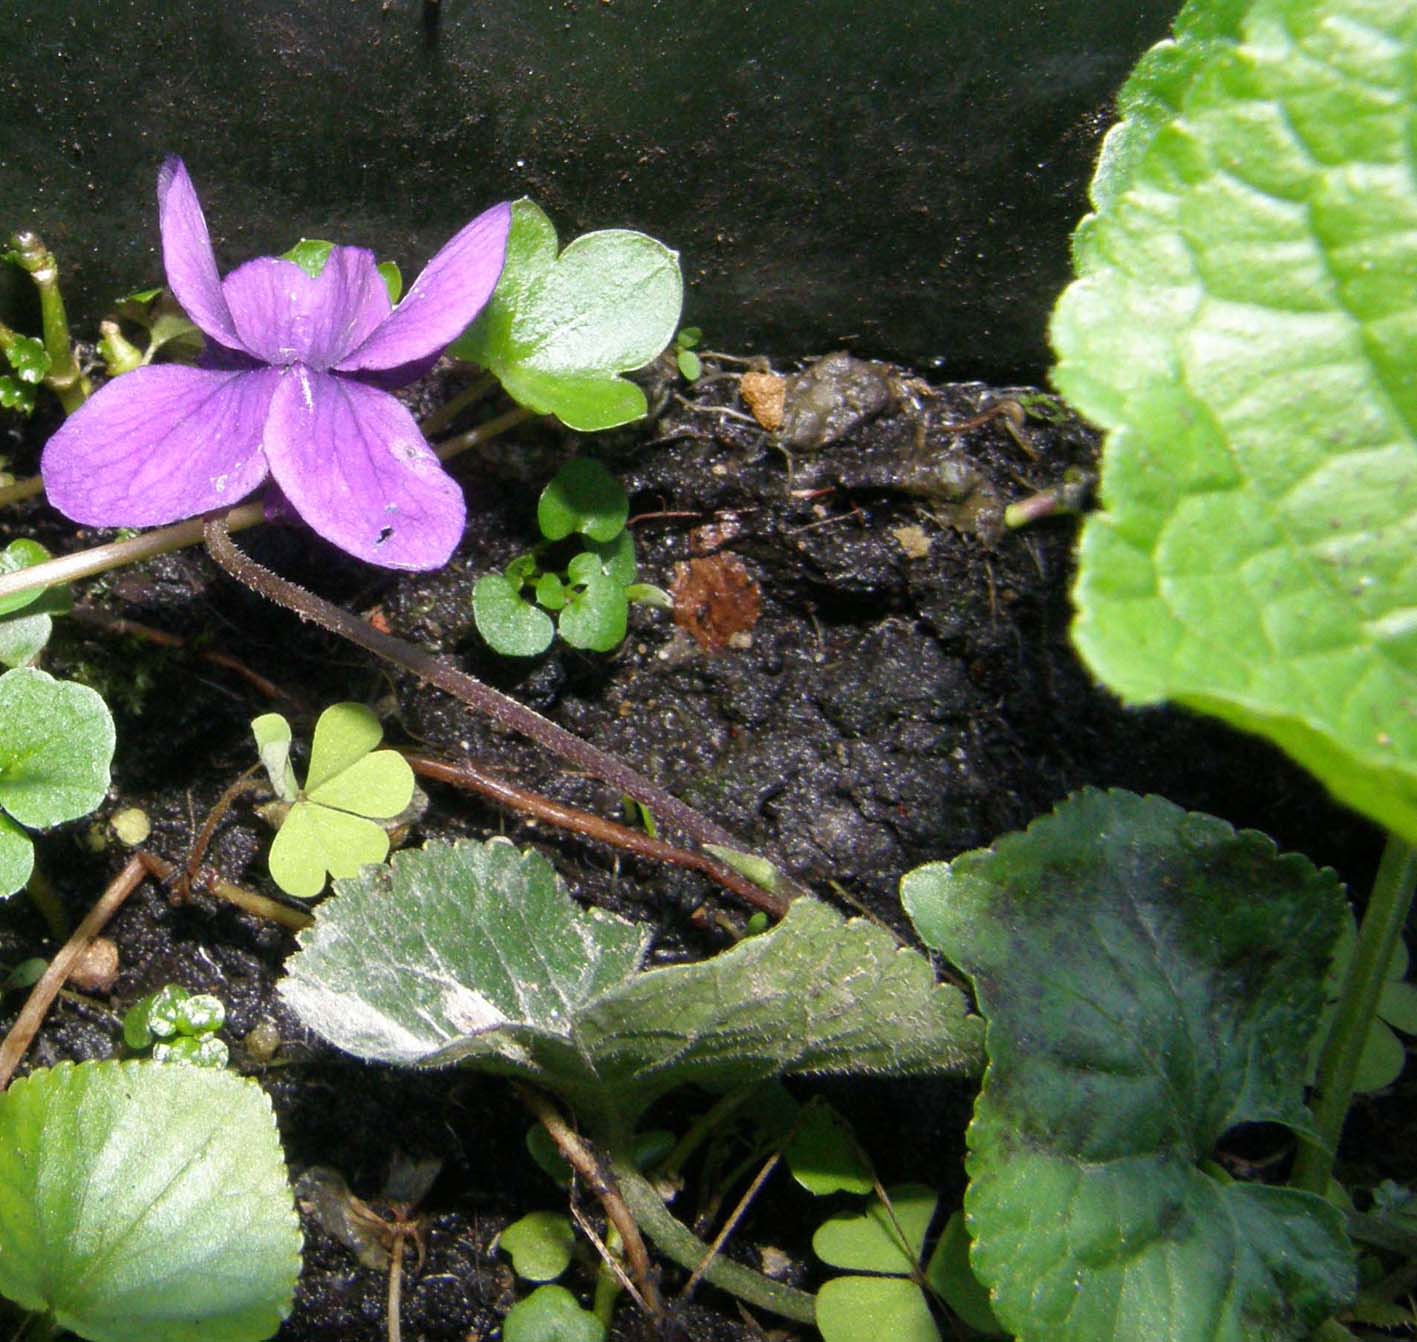 Ecco le prime viole: Viola odorata (Violaceae)